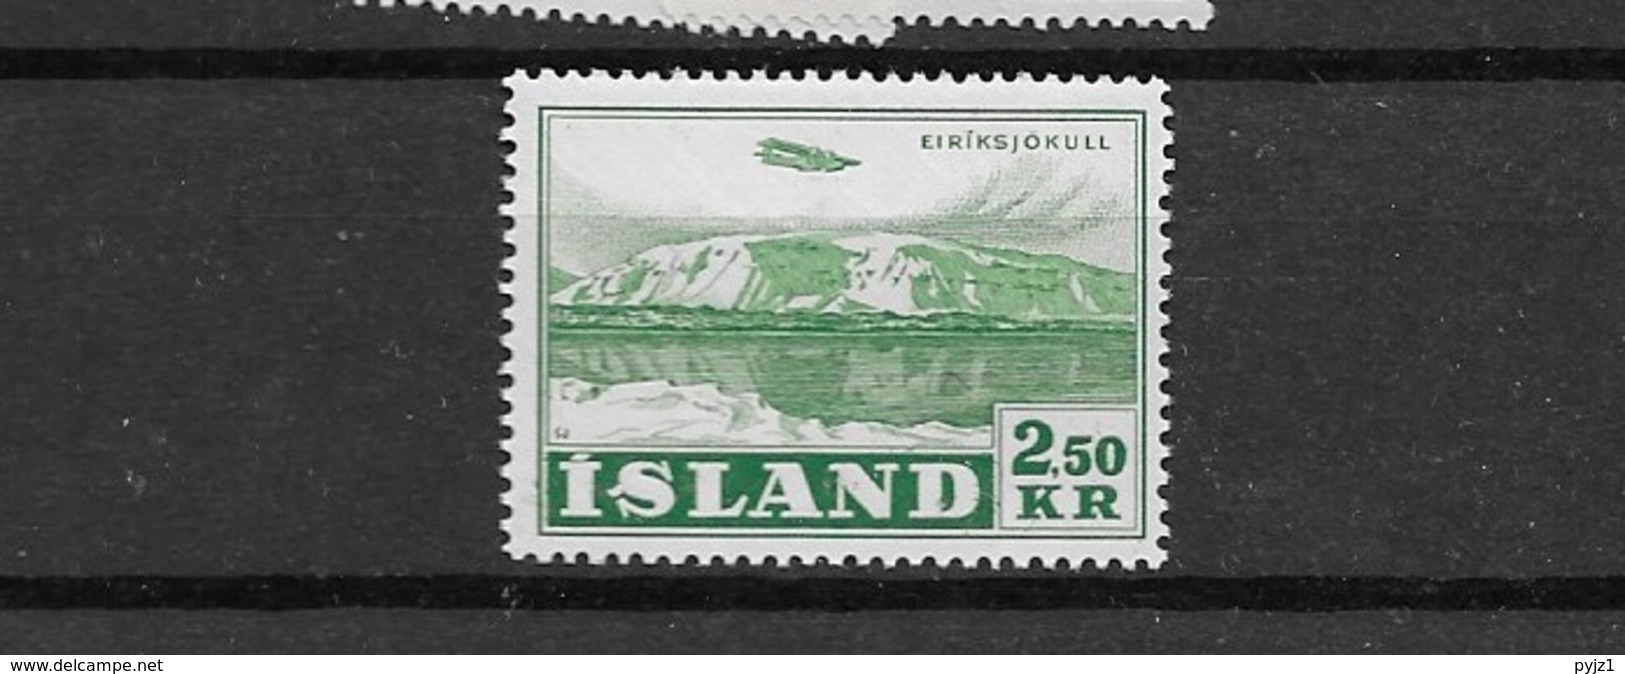 1952 MNH Iceland, Island, Mi 279 - Neufs